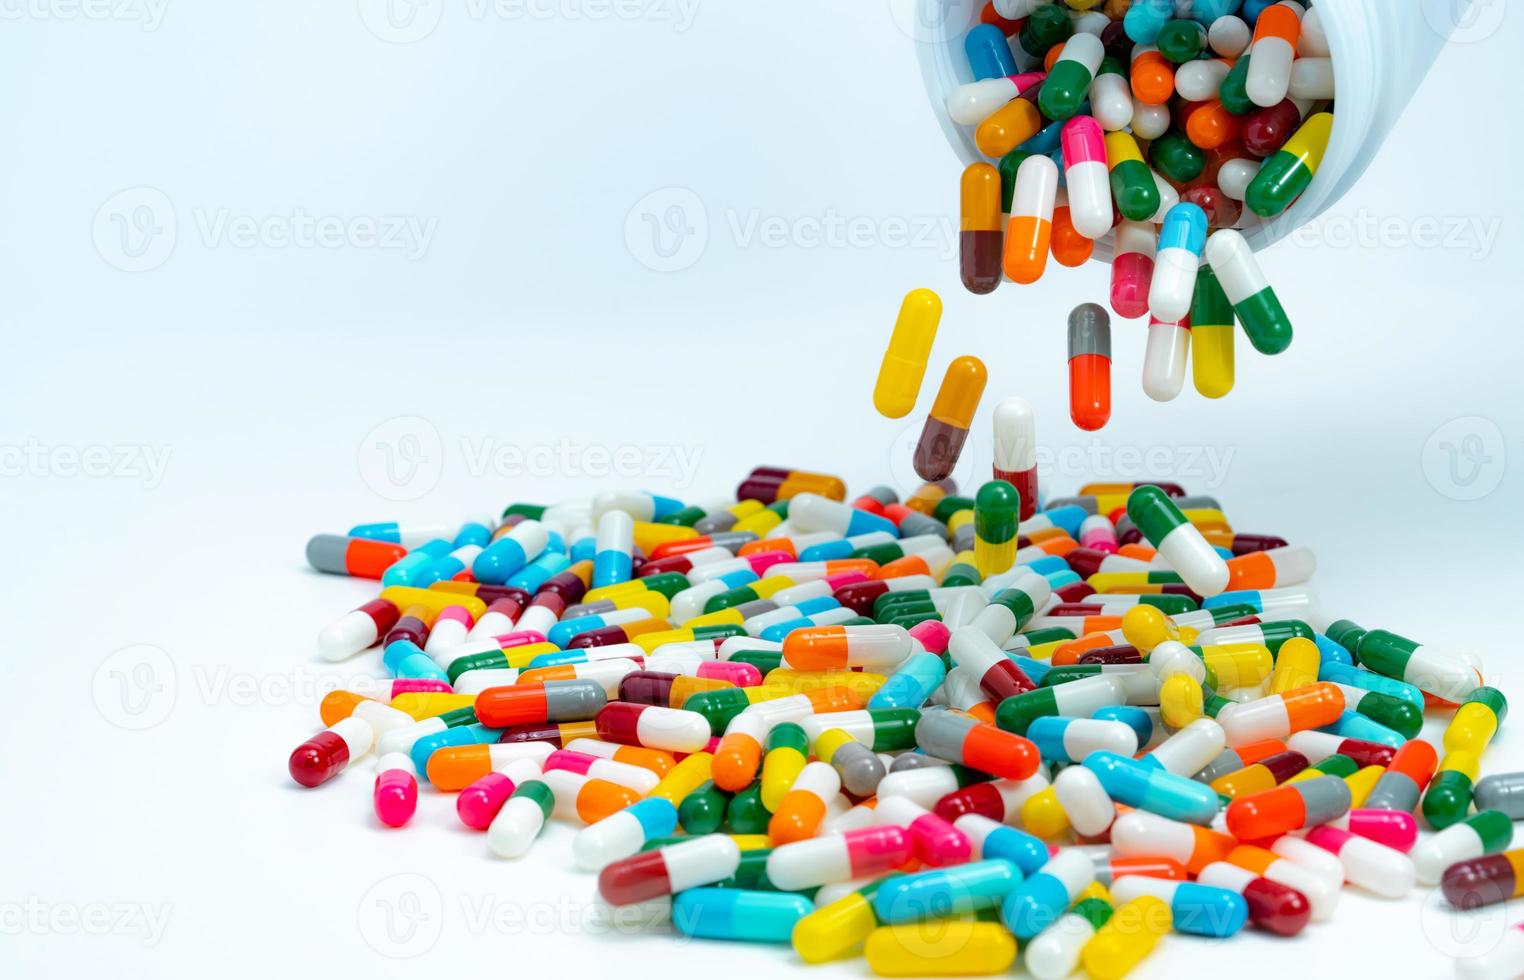 capsulepillen van plastic medicijnfles naar witte tafel gieten. stapel kleurrijke capsulepillen. farmaceutische industrie. gezondheidszorg en geneeskunde achtergrond. farmaceutisch concept. interacties tussen geneesmiddelen. foto